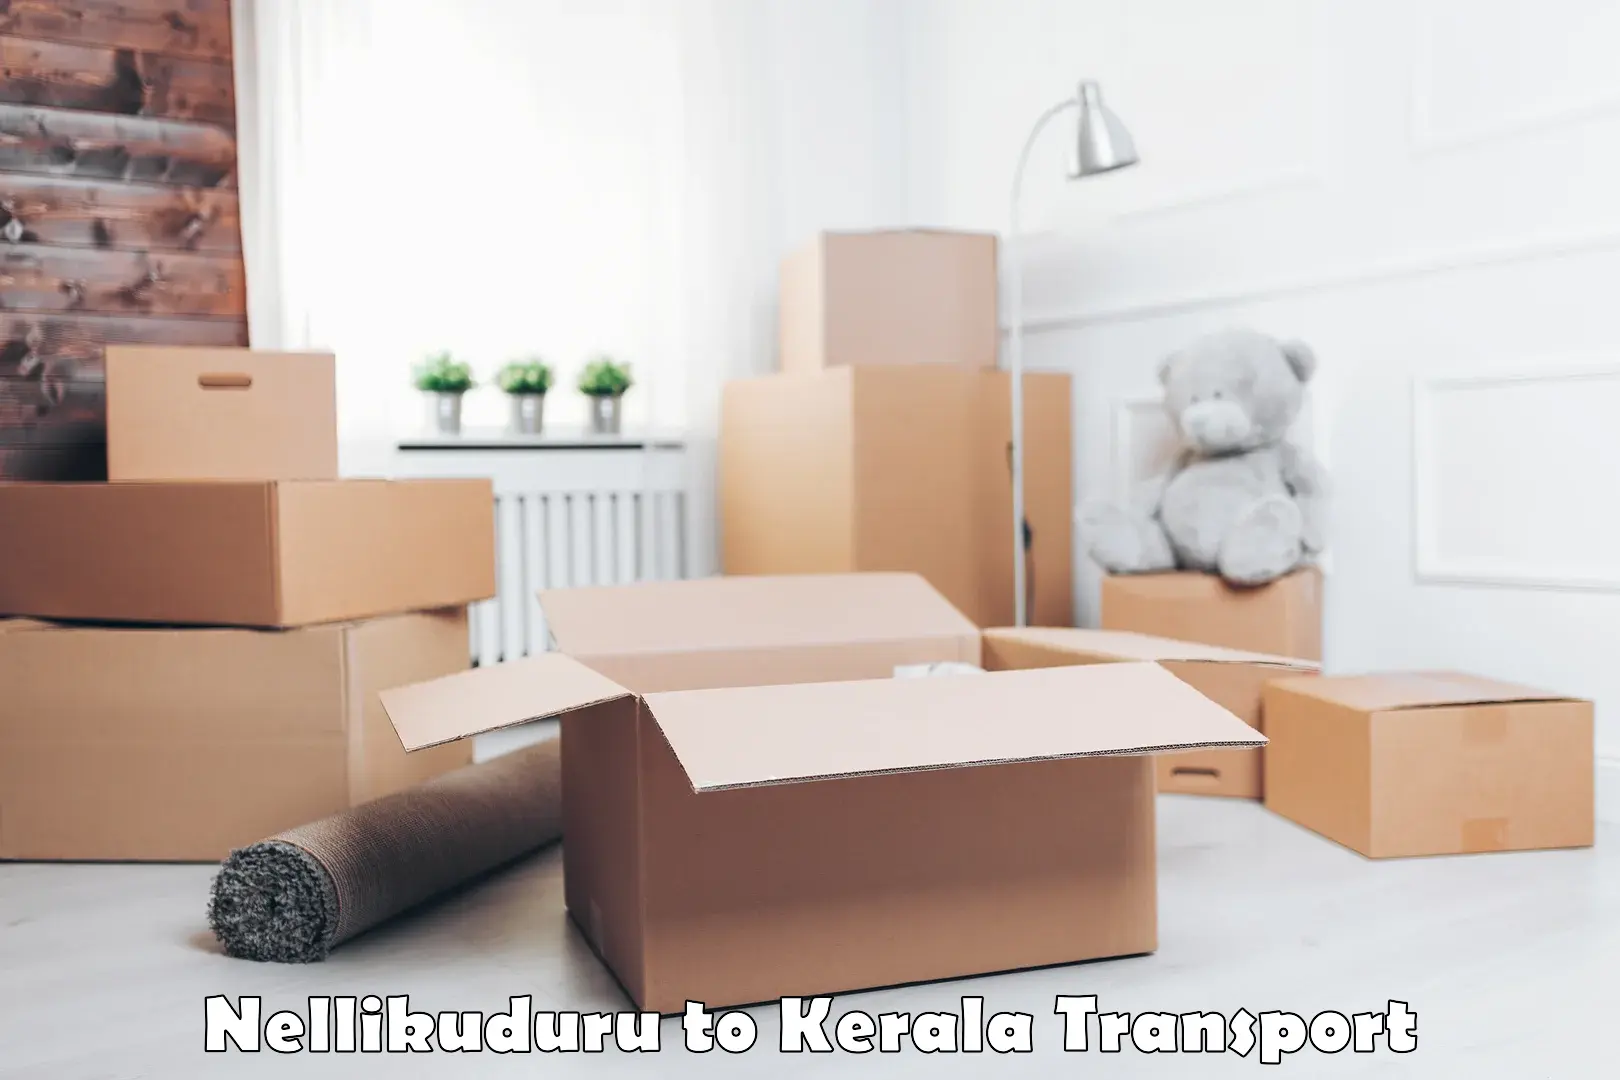 Container transport service in Nellikuduru to Thiruvananthapuram